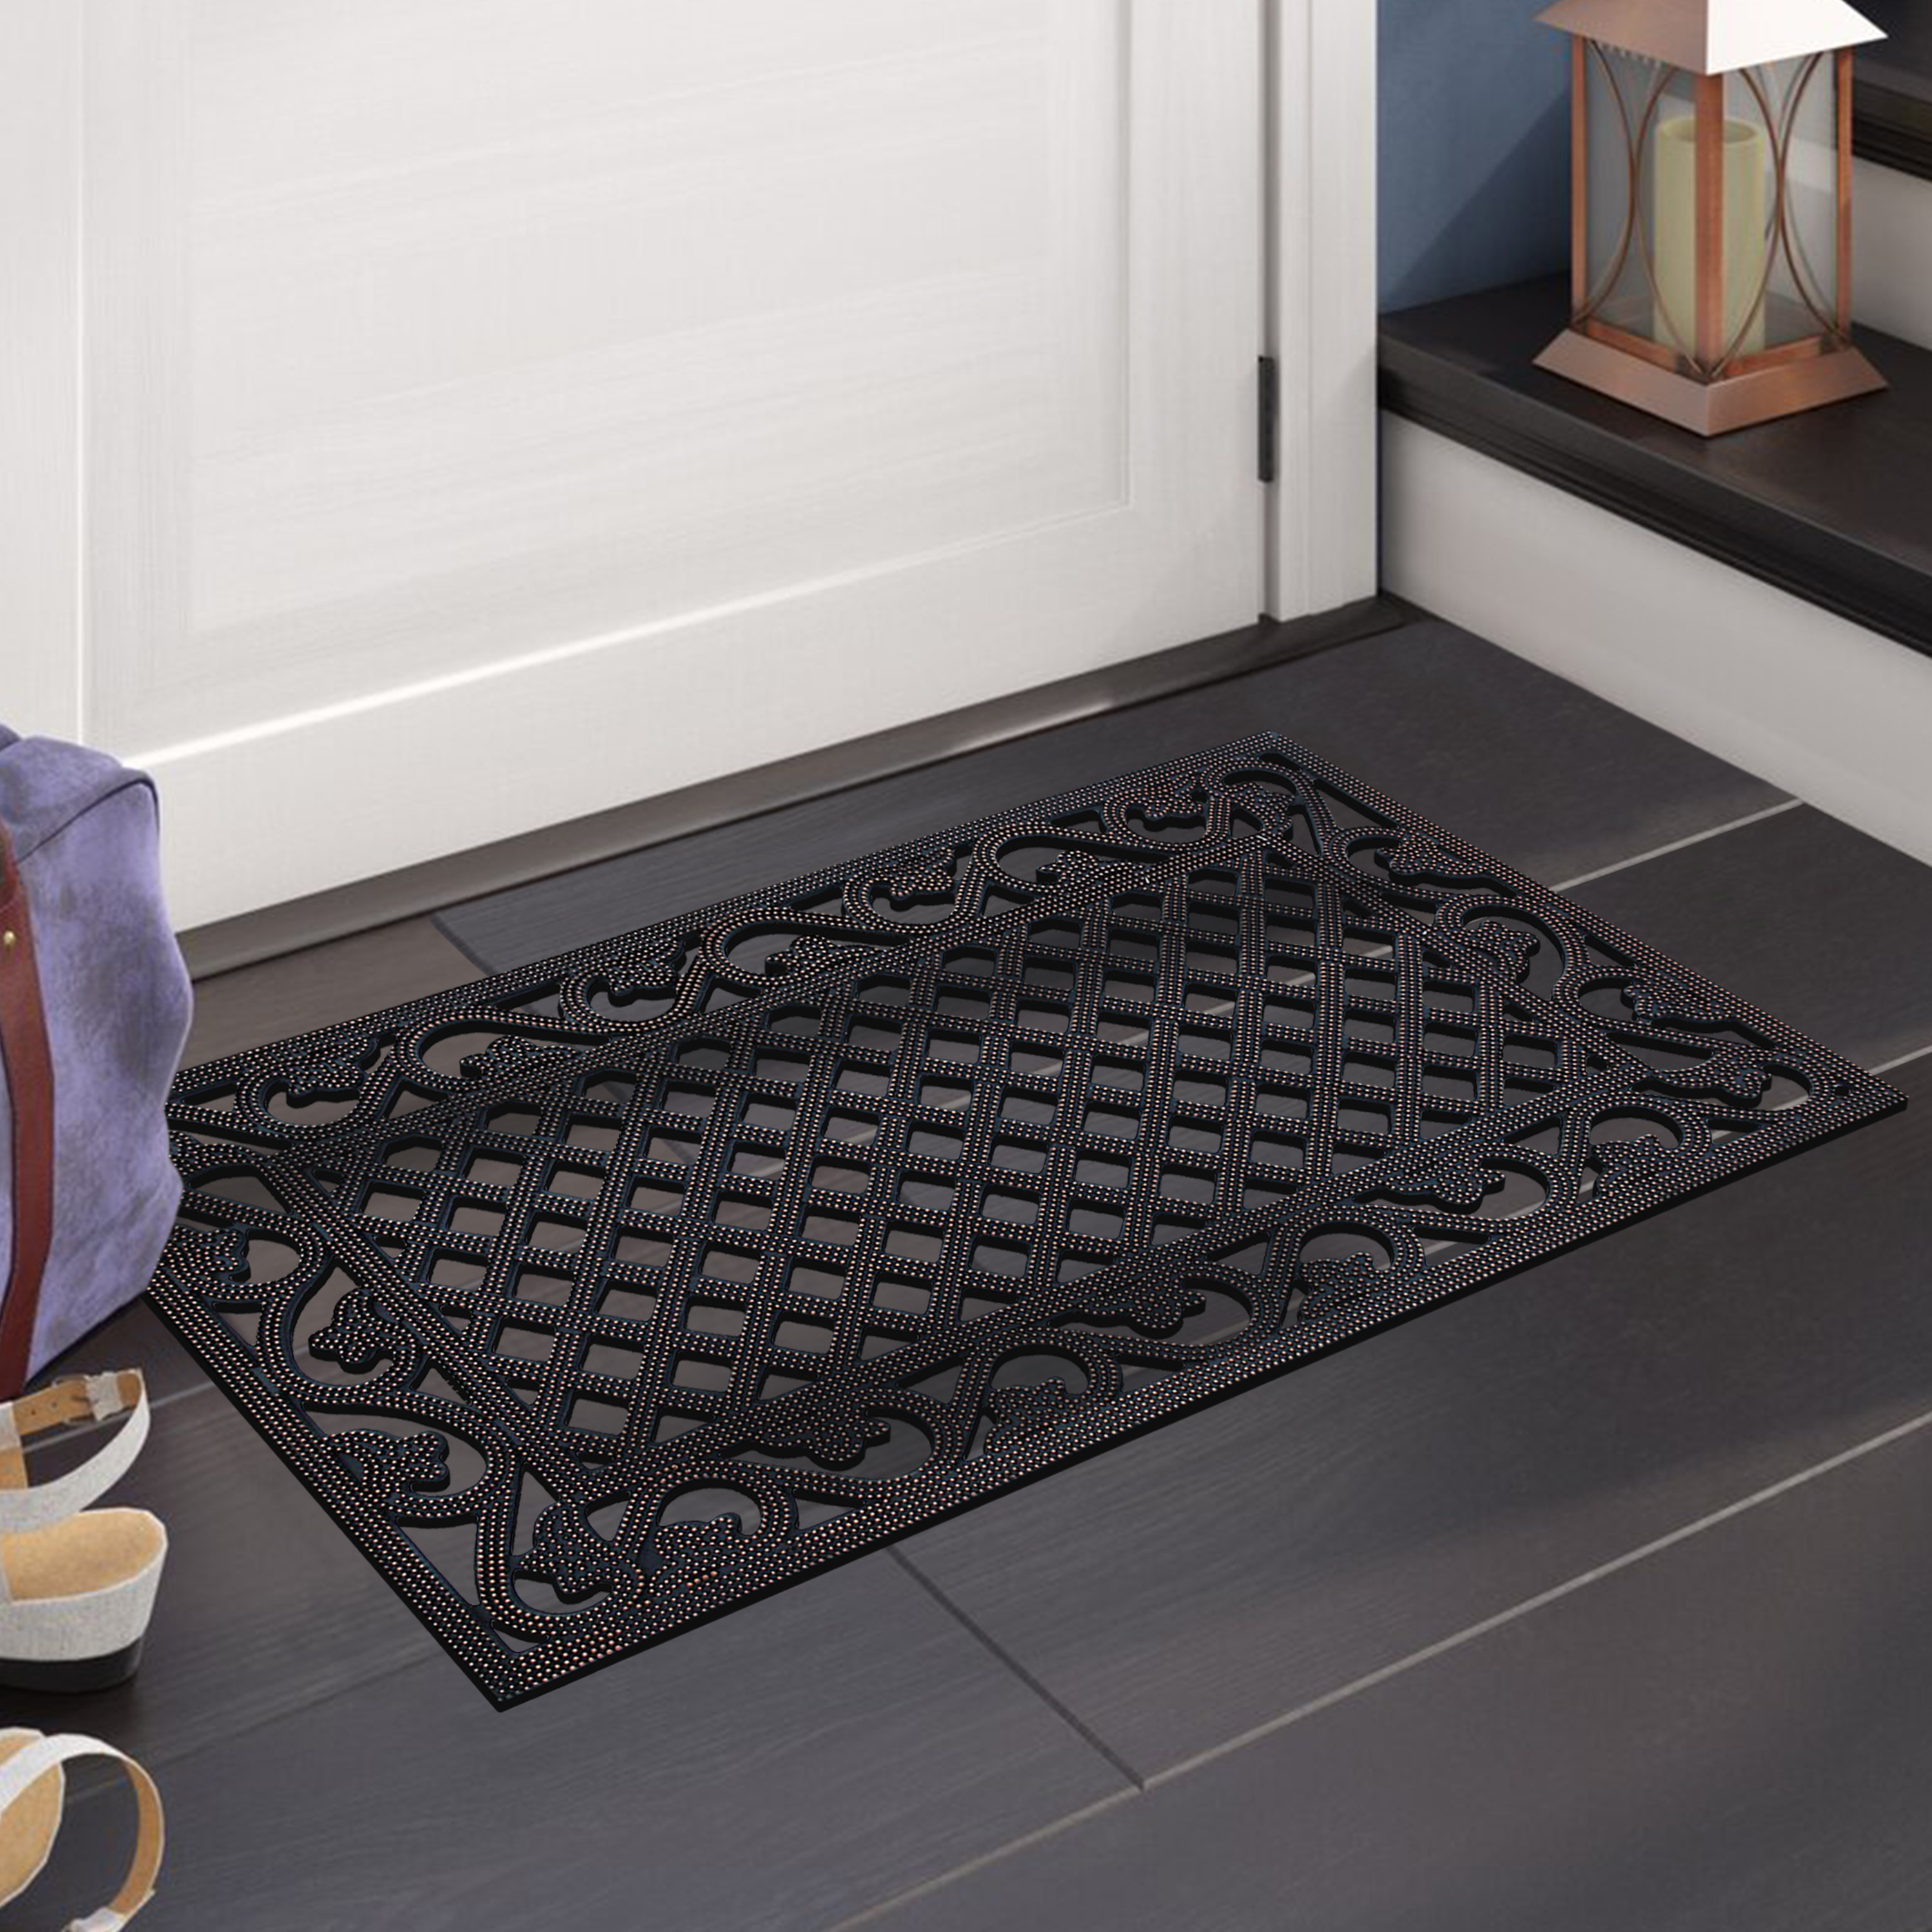 Funny Chicken Pattern Welcome Doormats Indoor And Outdoor Home